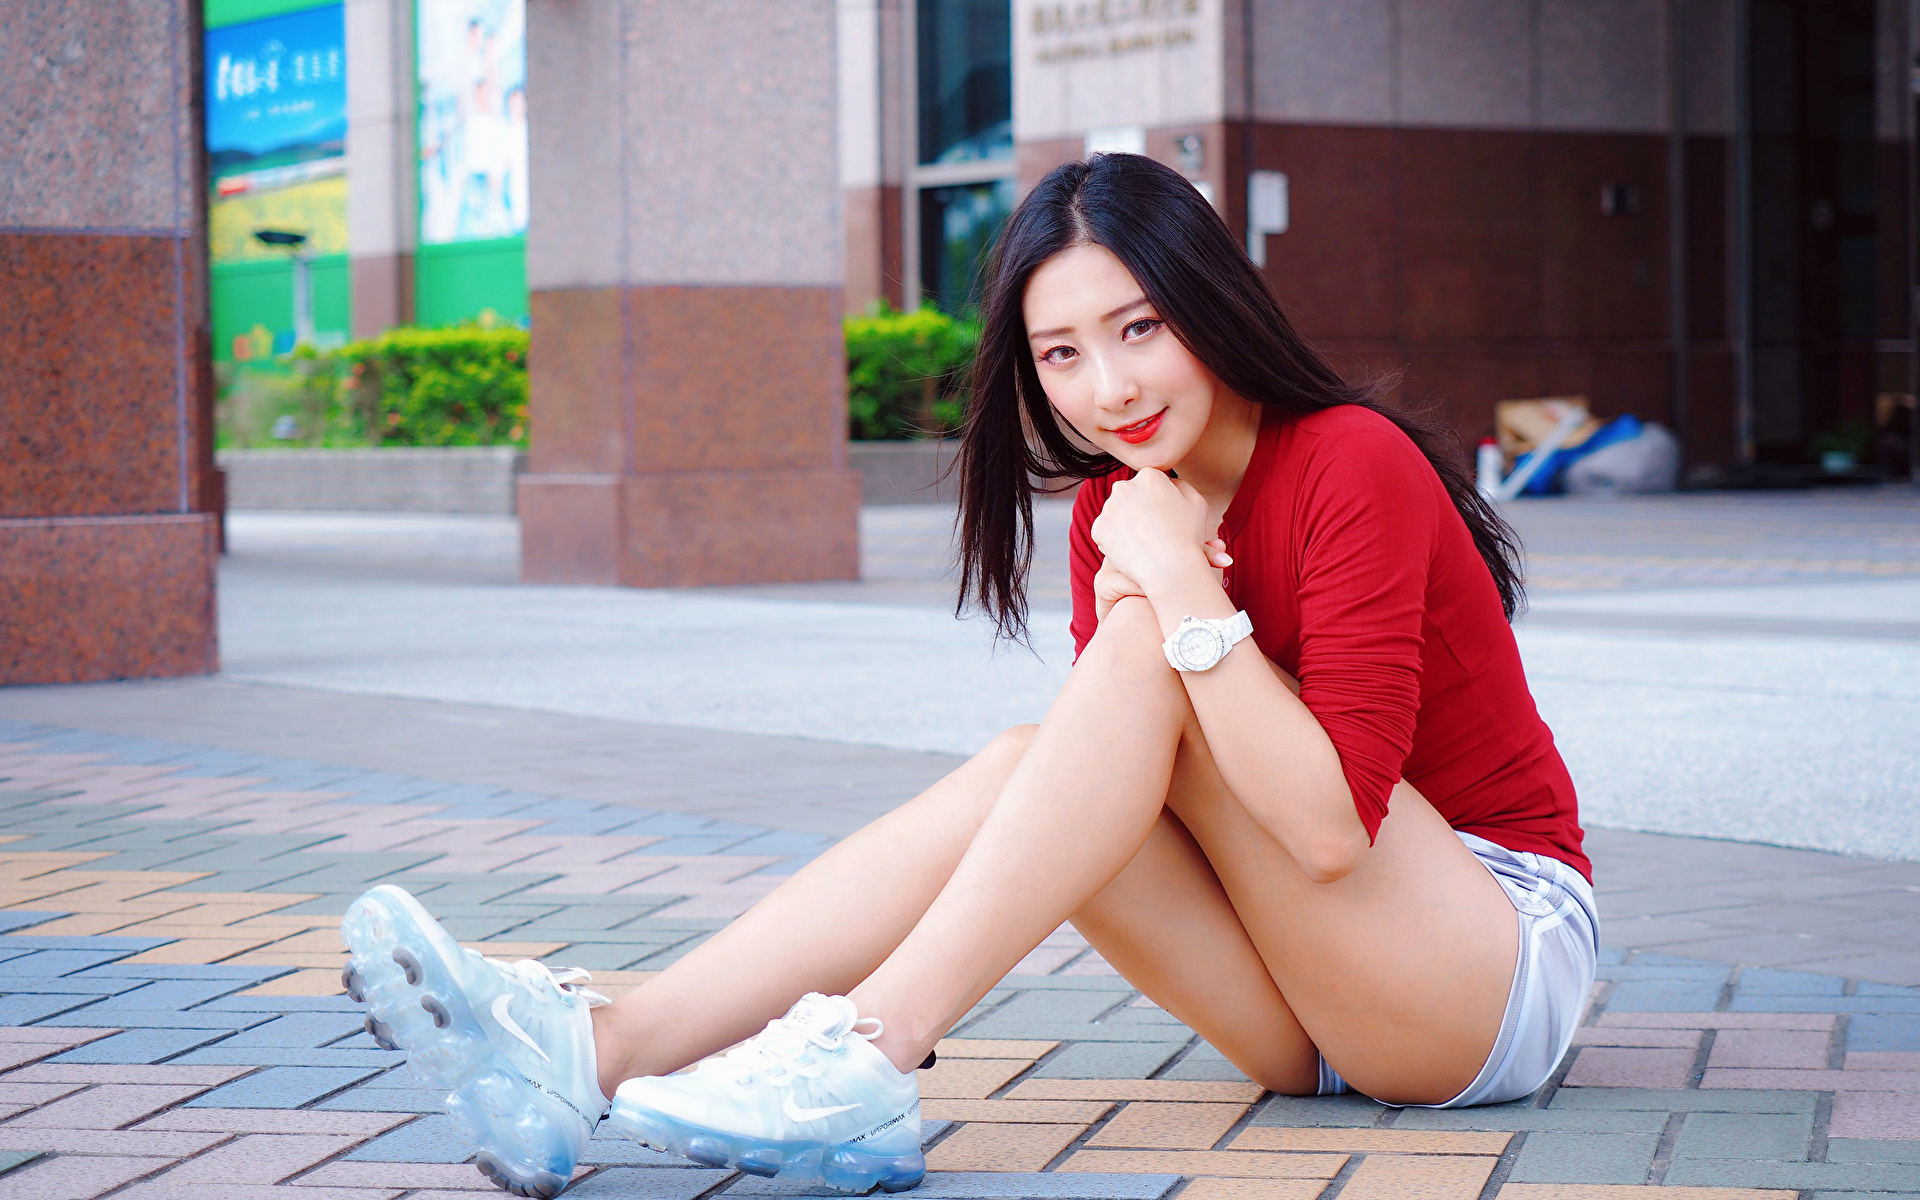 Фотография Блузка Девушки Ноги Азиаты сидя Шорты 1920x1200 девушка молодая женщина молодые женщины ног азиатки азиатка шорт Сидит шортах сидящие